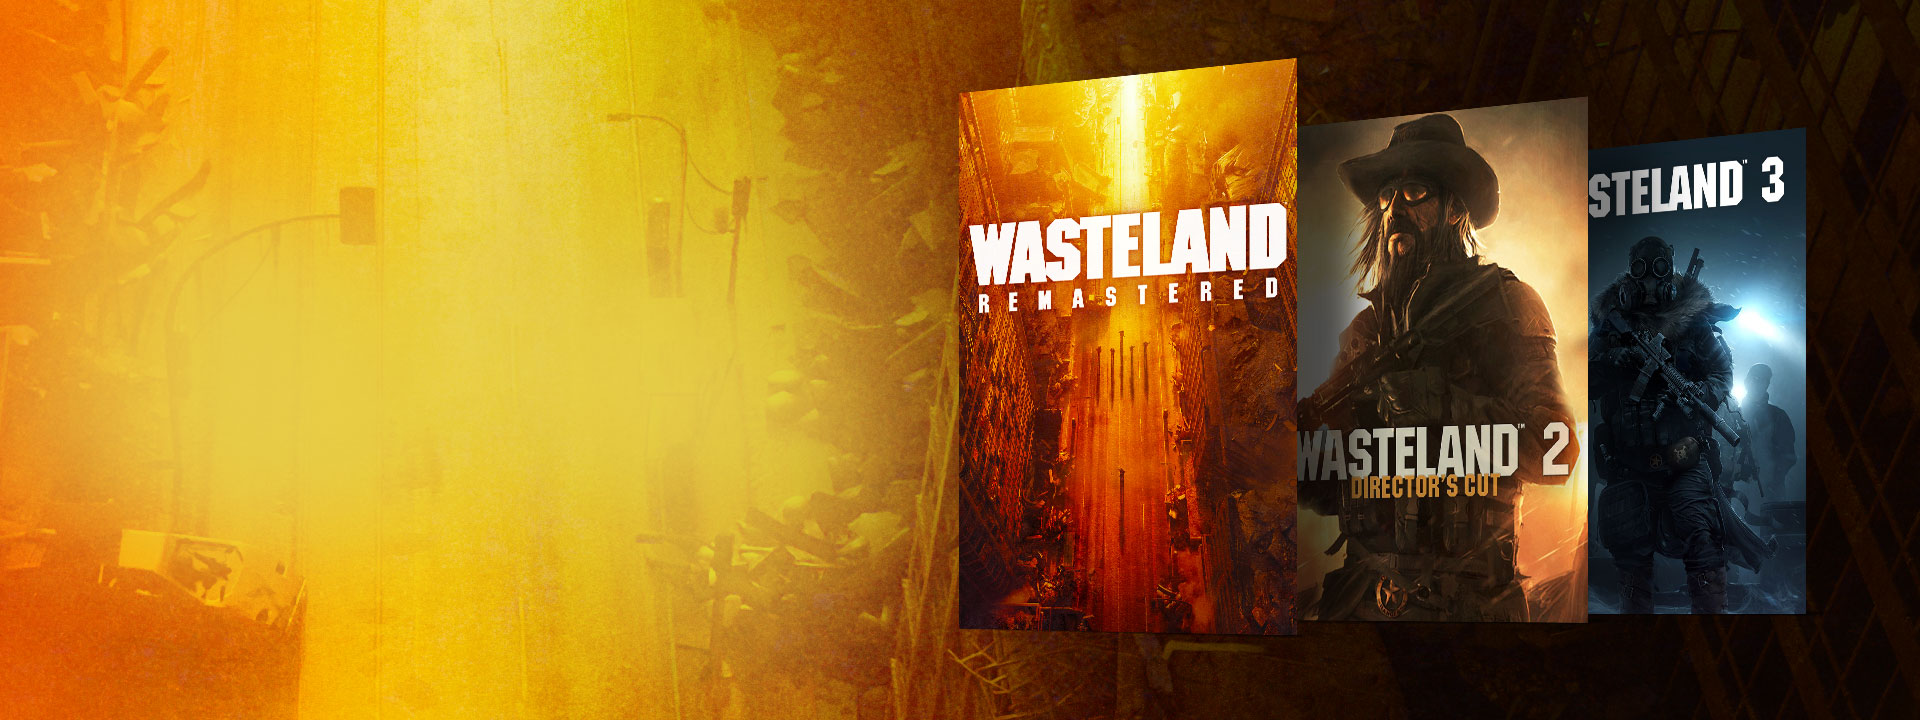 Imágenes de la caja de Wasteland Remastered, Wasteland 2 Director's Cut y Wasteland 3. Fondo de una calle abandonada con tonos amarillos y naranjas